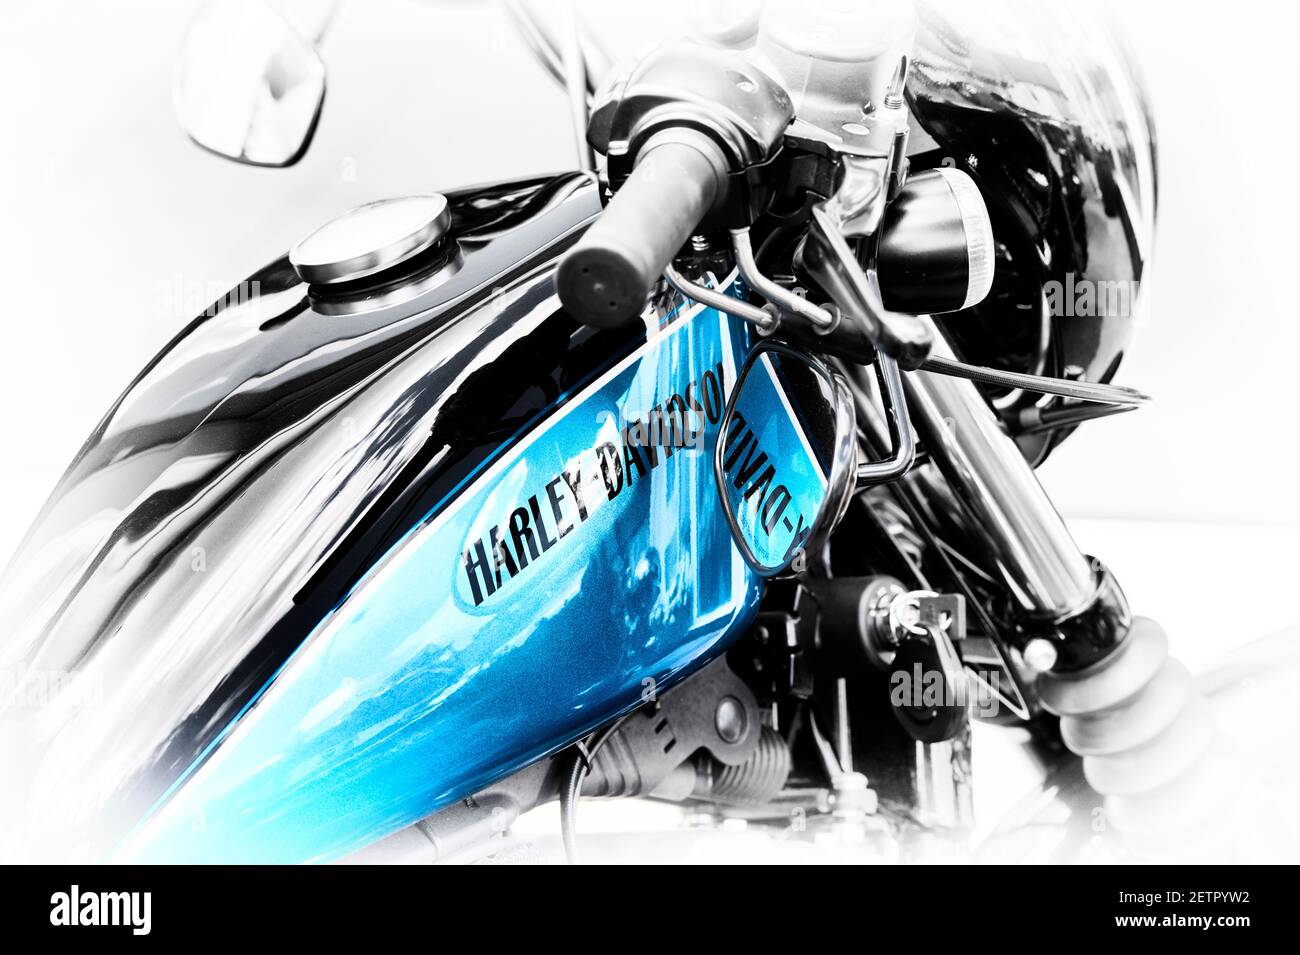 Harley Davidson Sportster Motorcycle Résumé. Noir et blanc bleu Banque D'Images